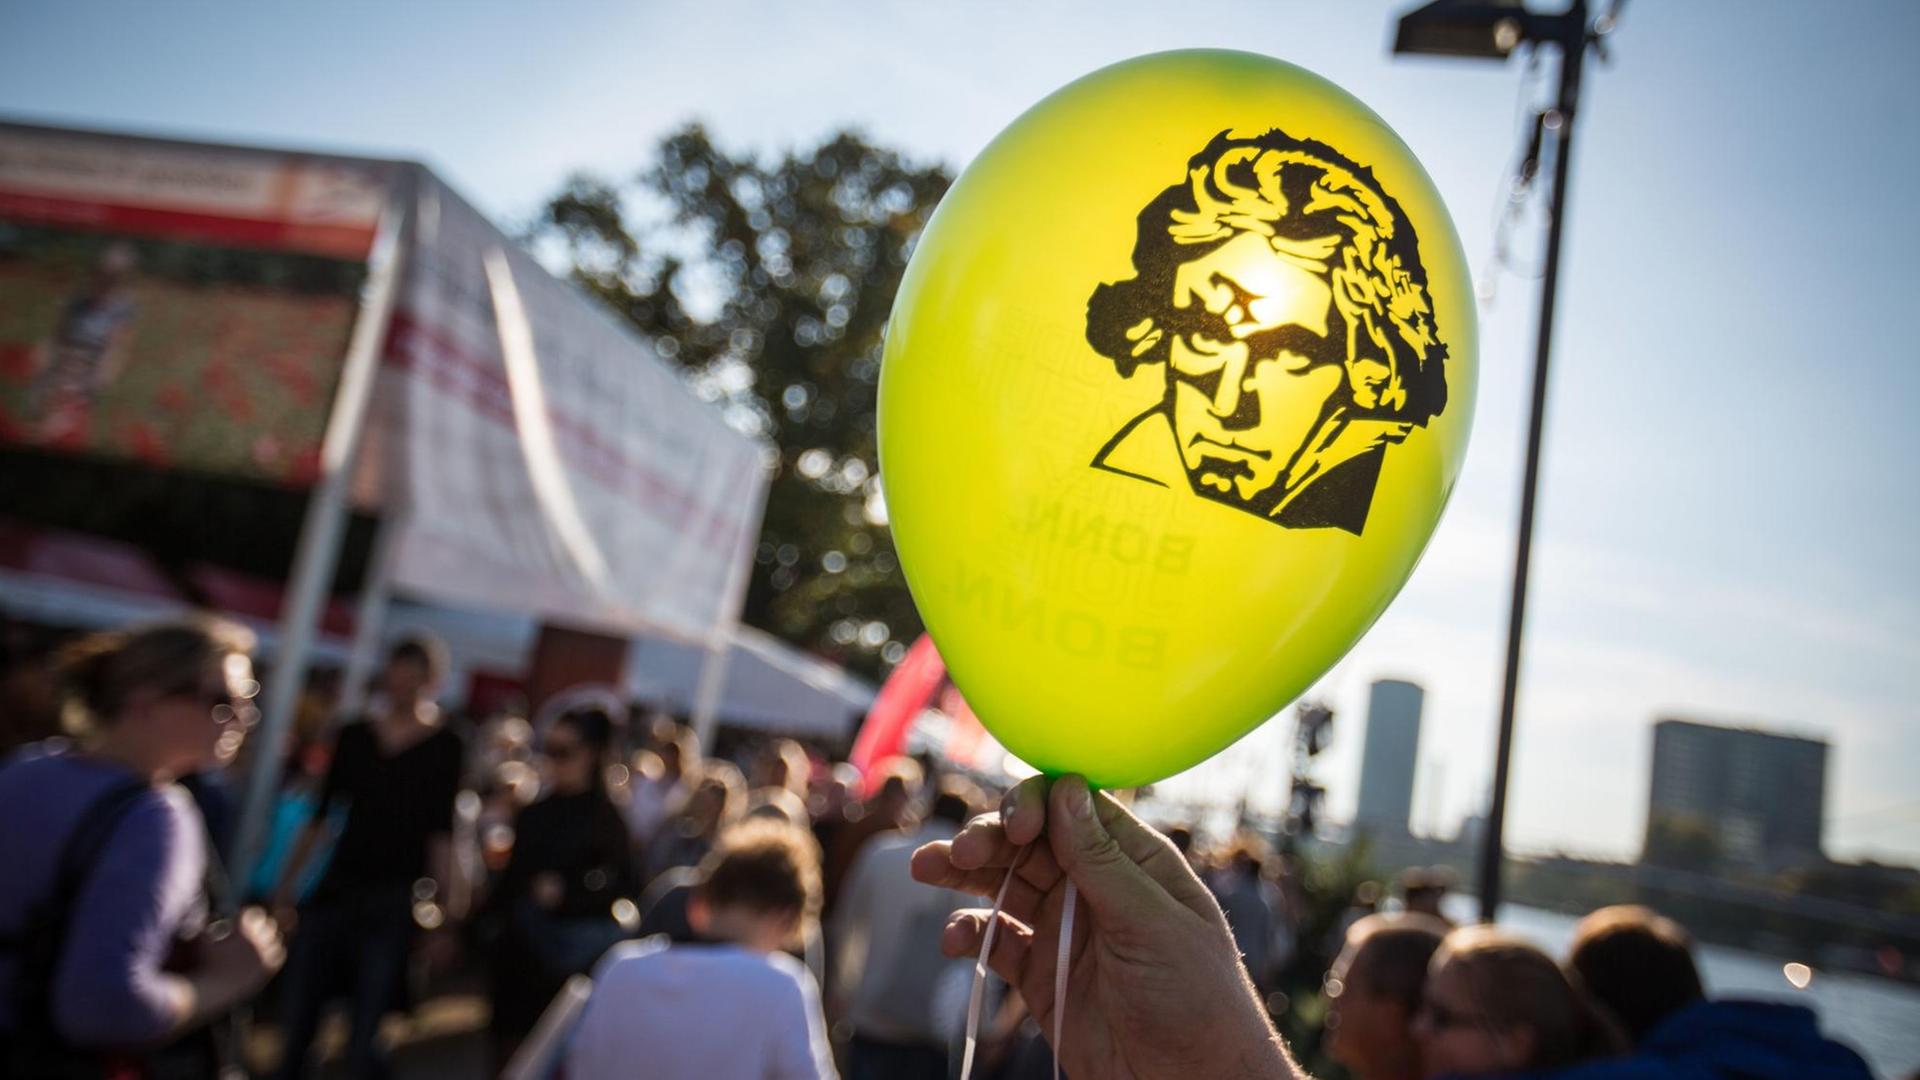 Das Konterfei von Ludwig van Beethoven auf einem Luftballon wird gegen die Sonne gehalten.